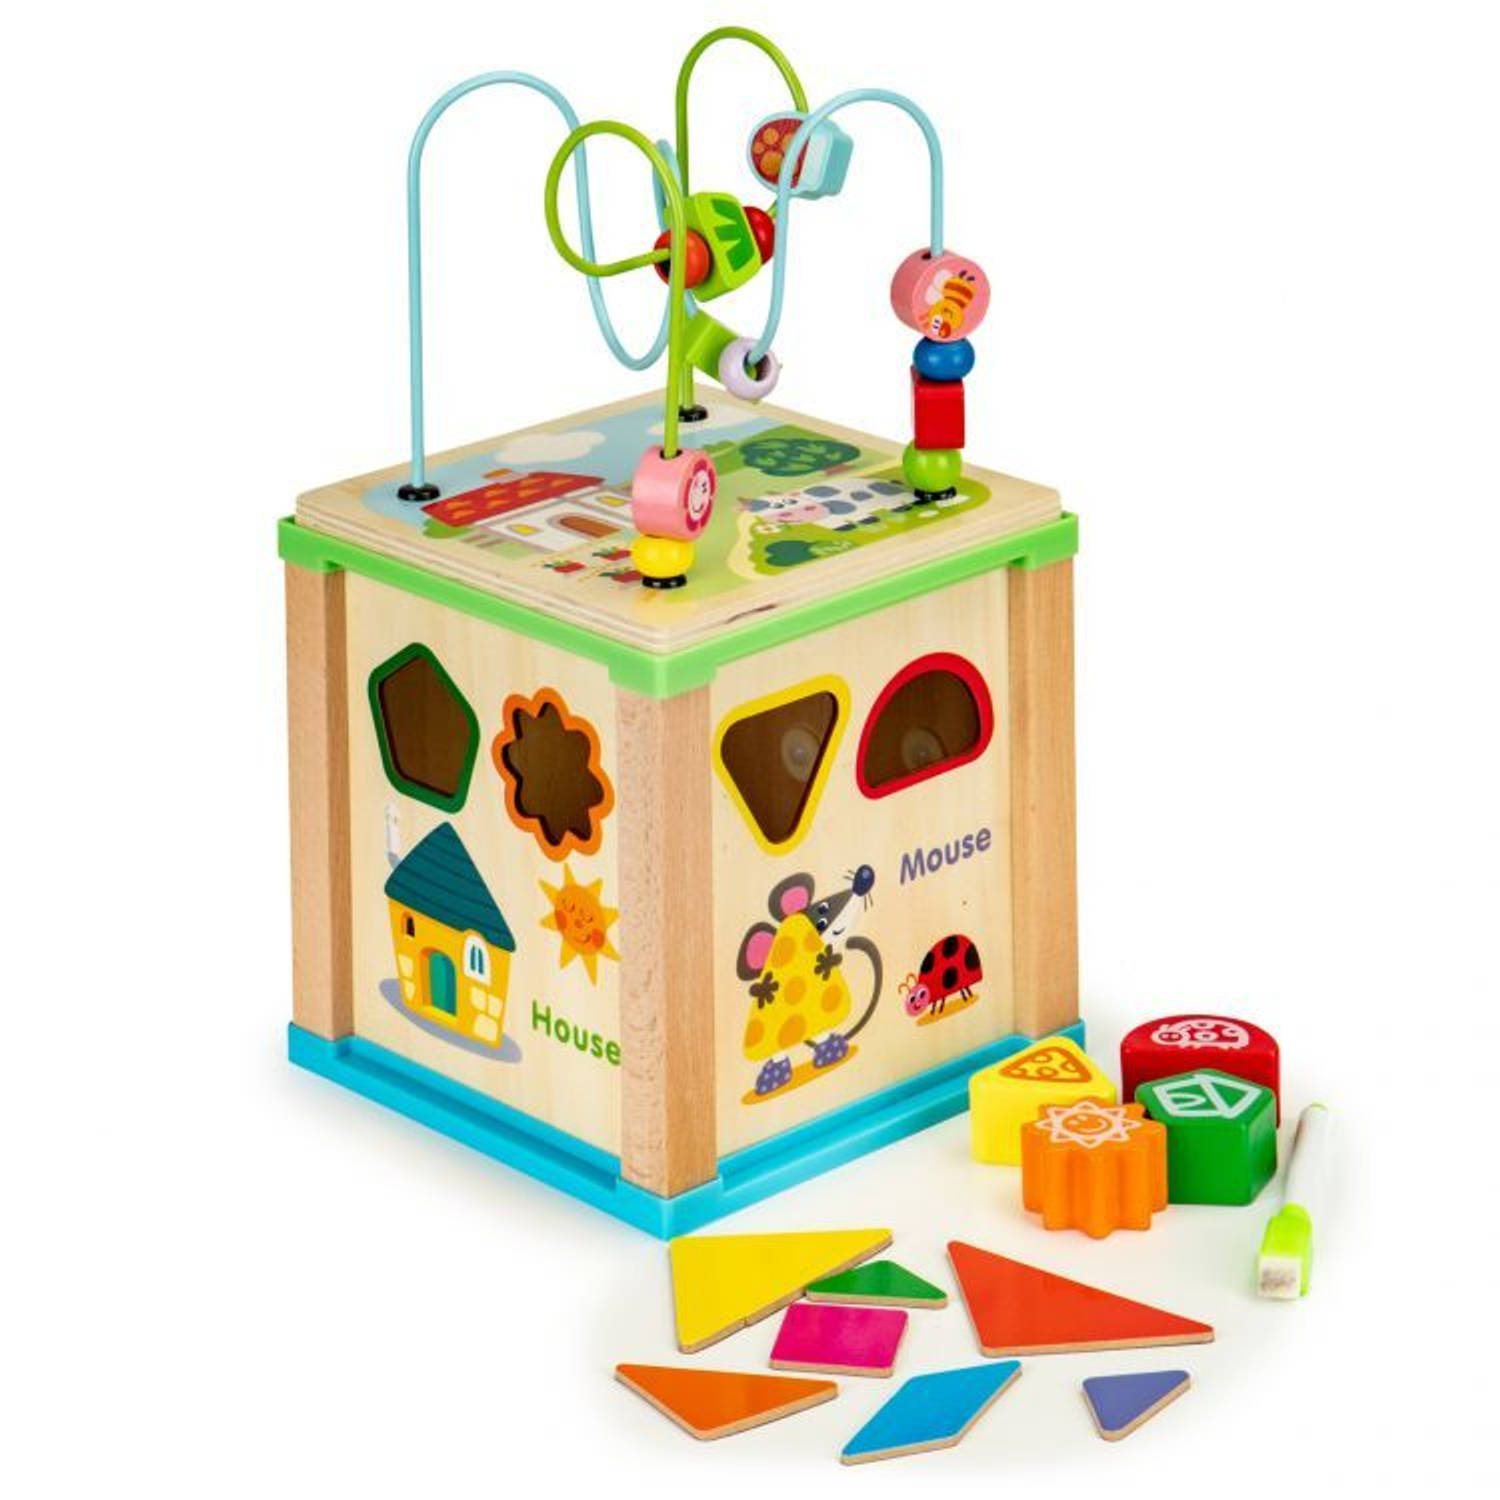 Ecotoys duurzame houten educatieve activiteiten kubus - Met bord om te schrijven - Educatief speelgoed - Montessori speelgoed - 18 x 18 x 33 cm